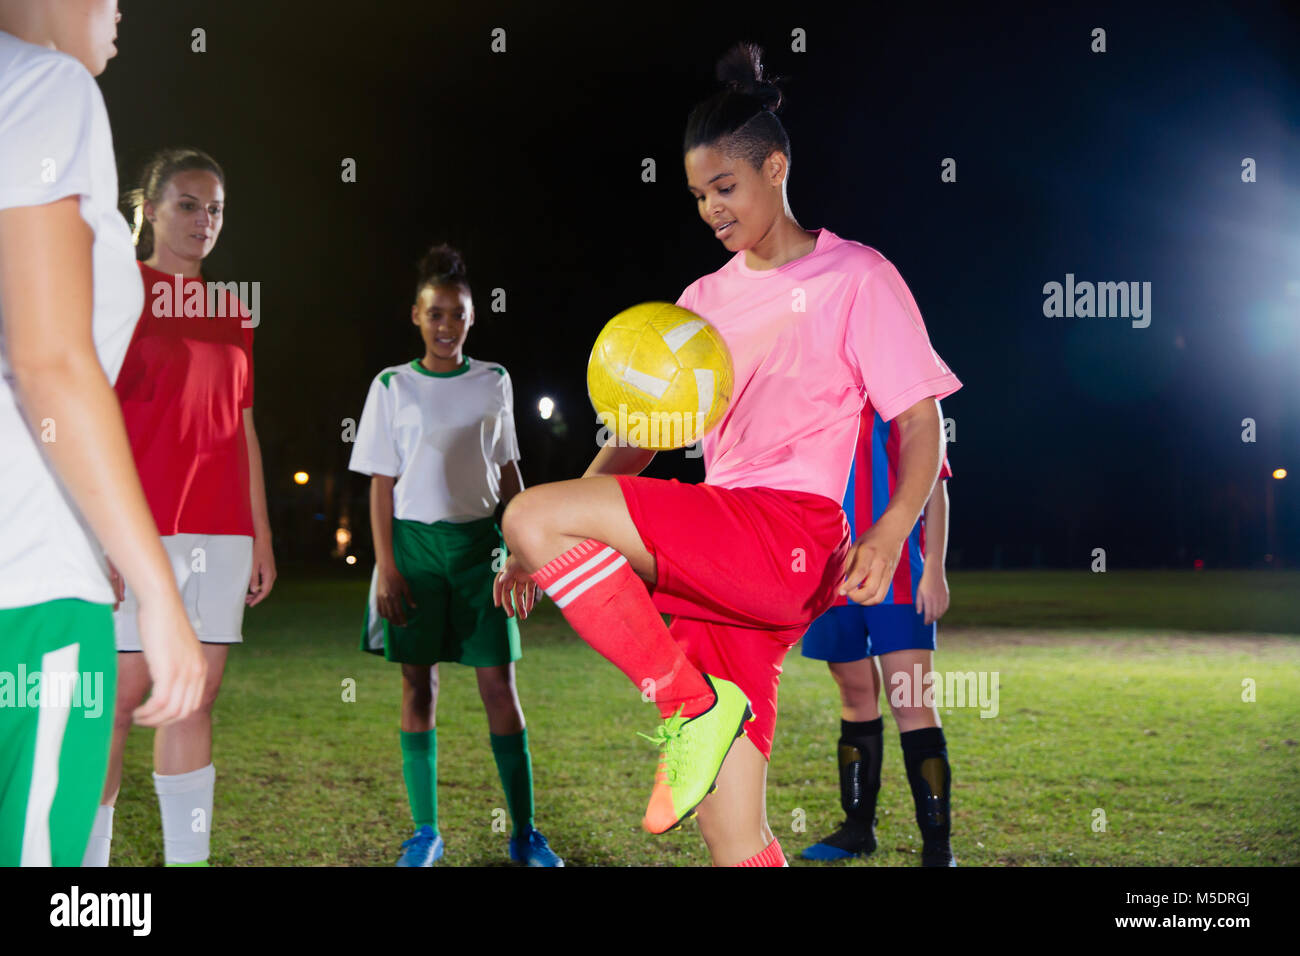 Jeune joueur de soccer féminin pratiquant, balle qui rebondit sur le genou de nuit sur le terrain Banque D'Images